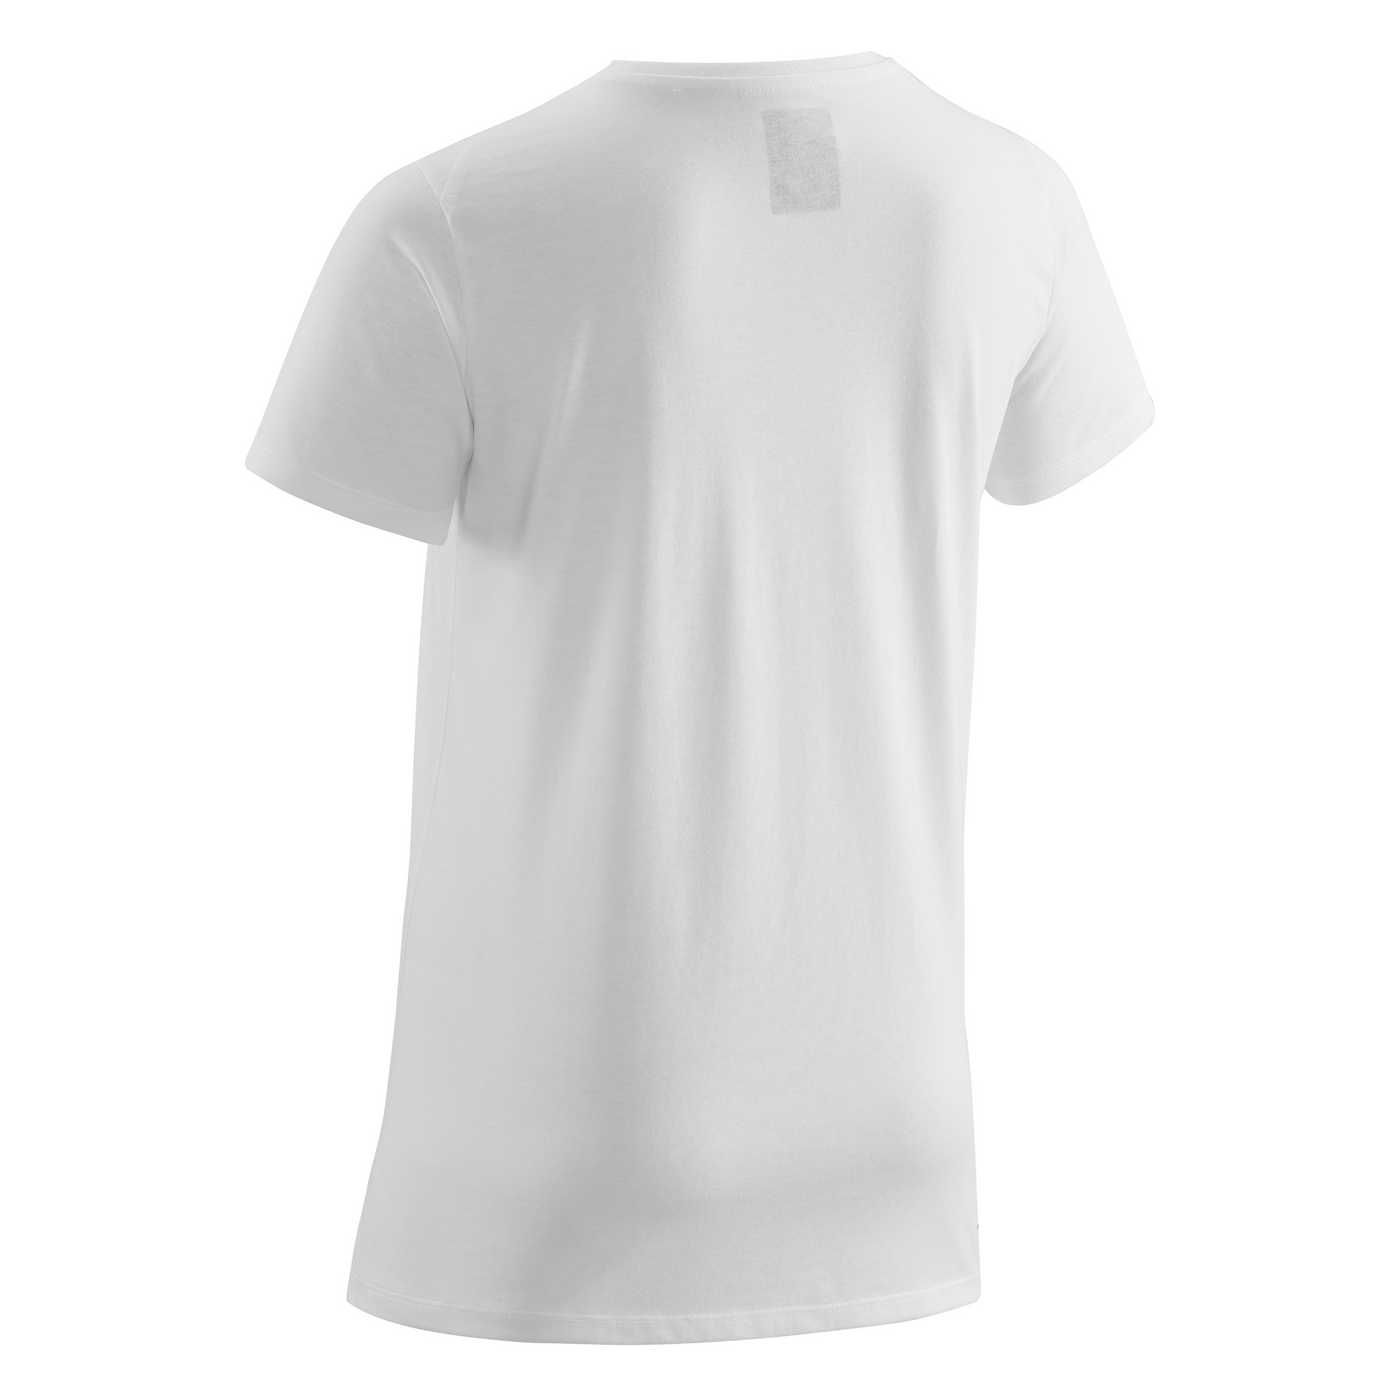 Crew Short Sleeve Shirt, Men, White, Back View